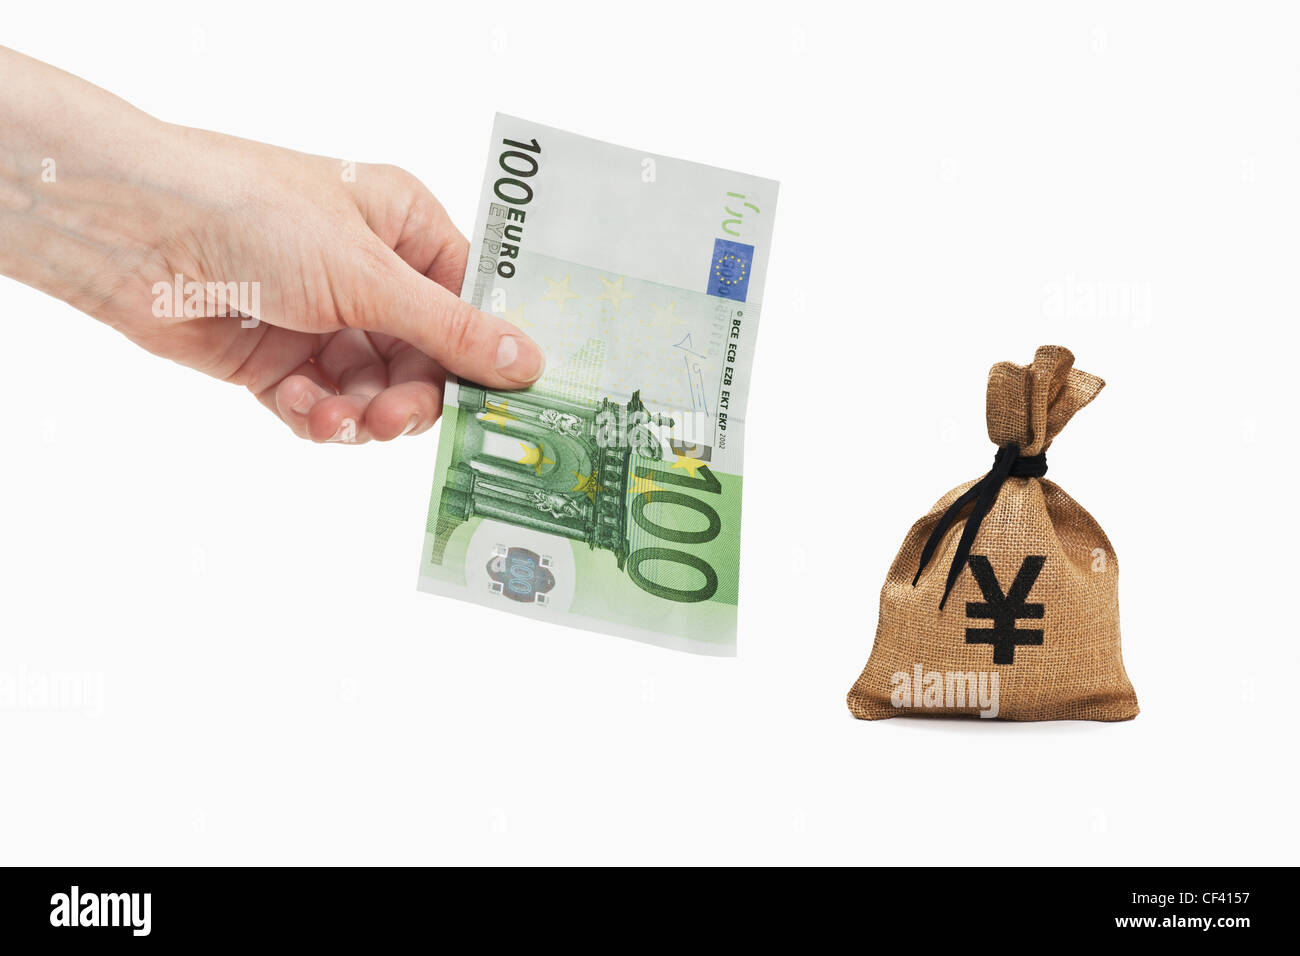 Un Euro 100 bill è tenuto in mano. Nelle vicinanze si trova un sacco di denaro con un Yen giapponese simbolo della valuta. Foto Stock